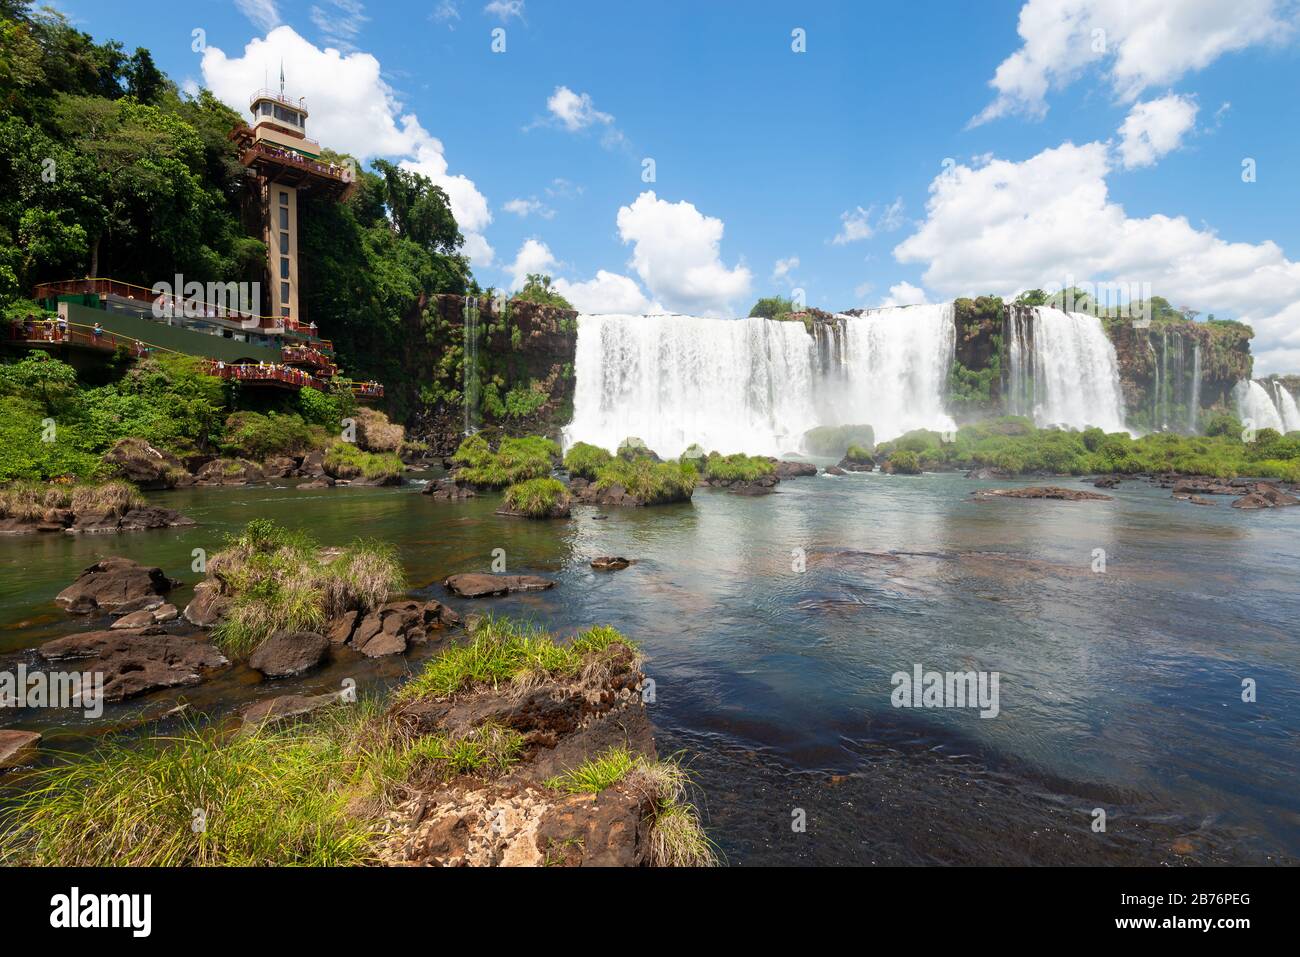 Cataratas do Iguaçu Paysage naturel en Amérique du Sud avec de multiples chutes d'eau. Infrastructure du parc national montrant une tour / un ascenseur pour les touristes. Banque D'Images